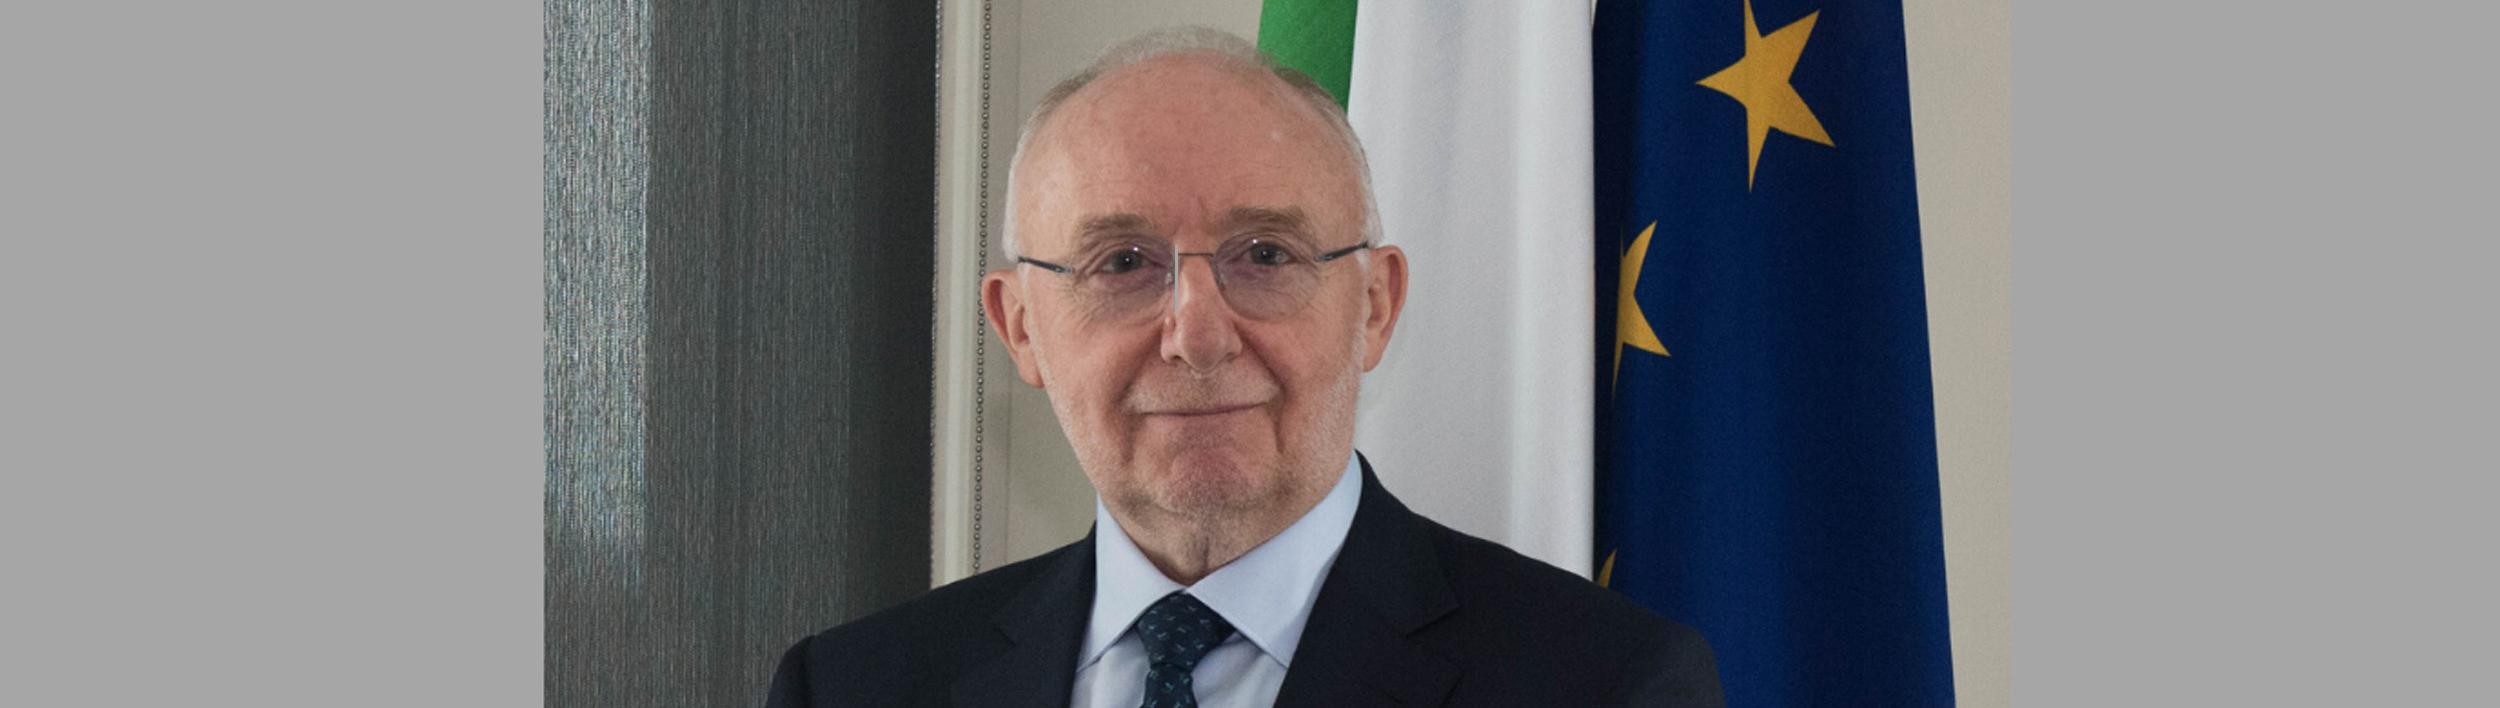 Il nuovo Presidente dell'ICAO Salvatore Sciacchitano